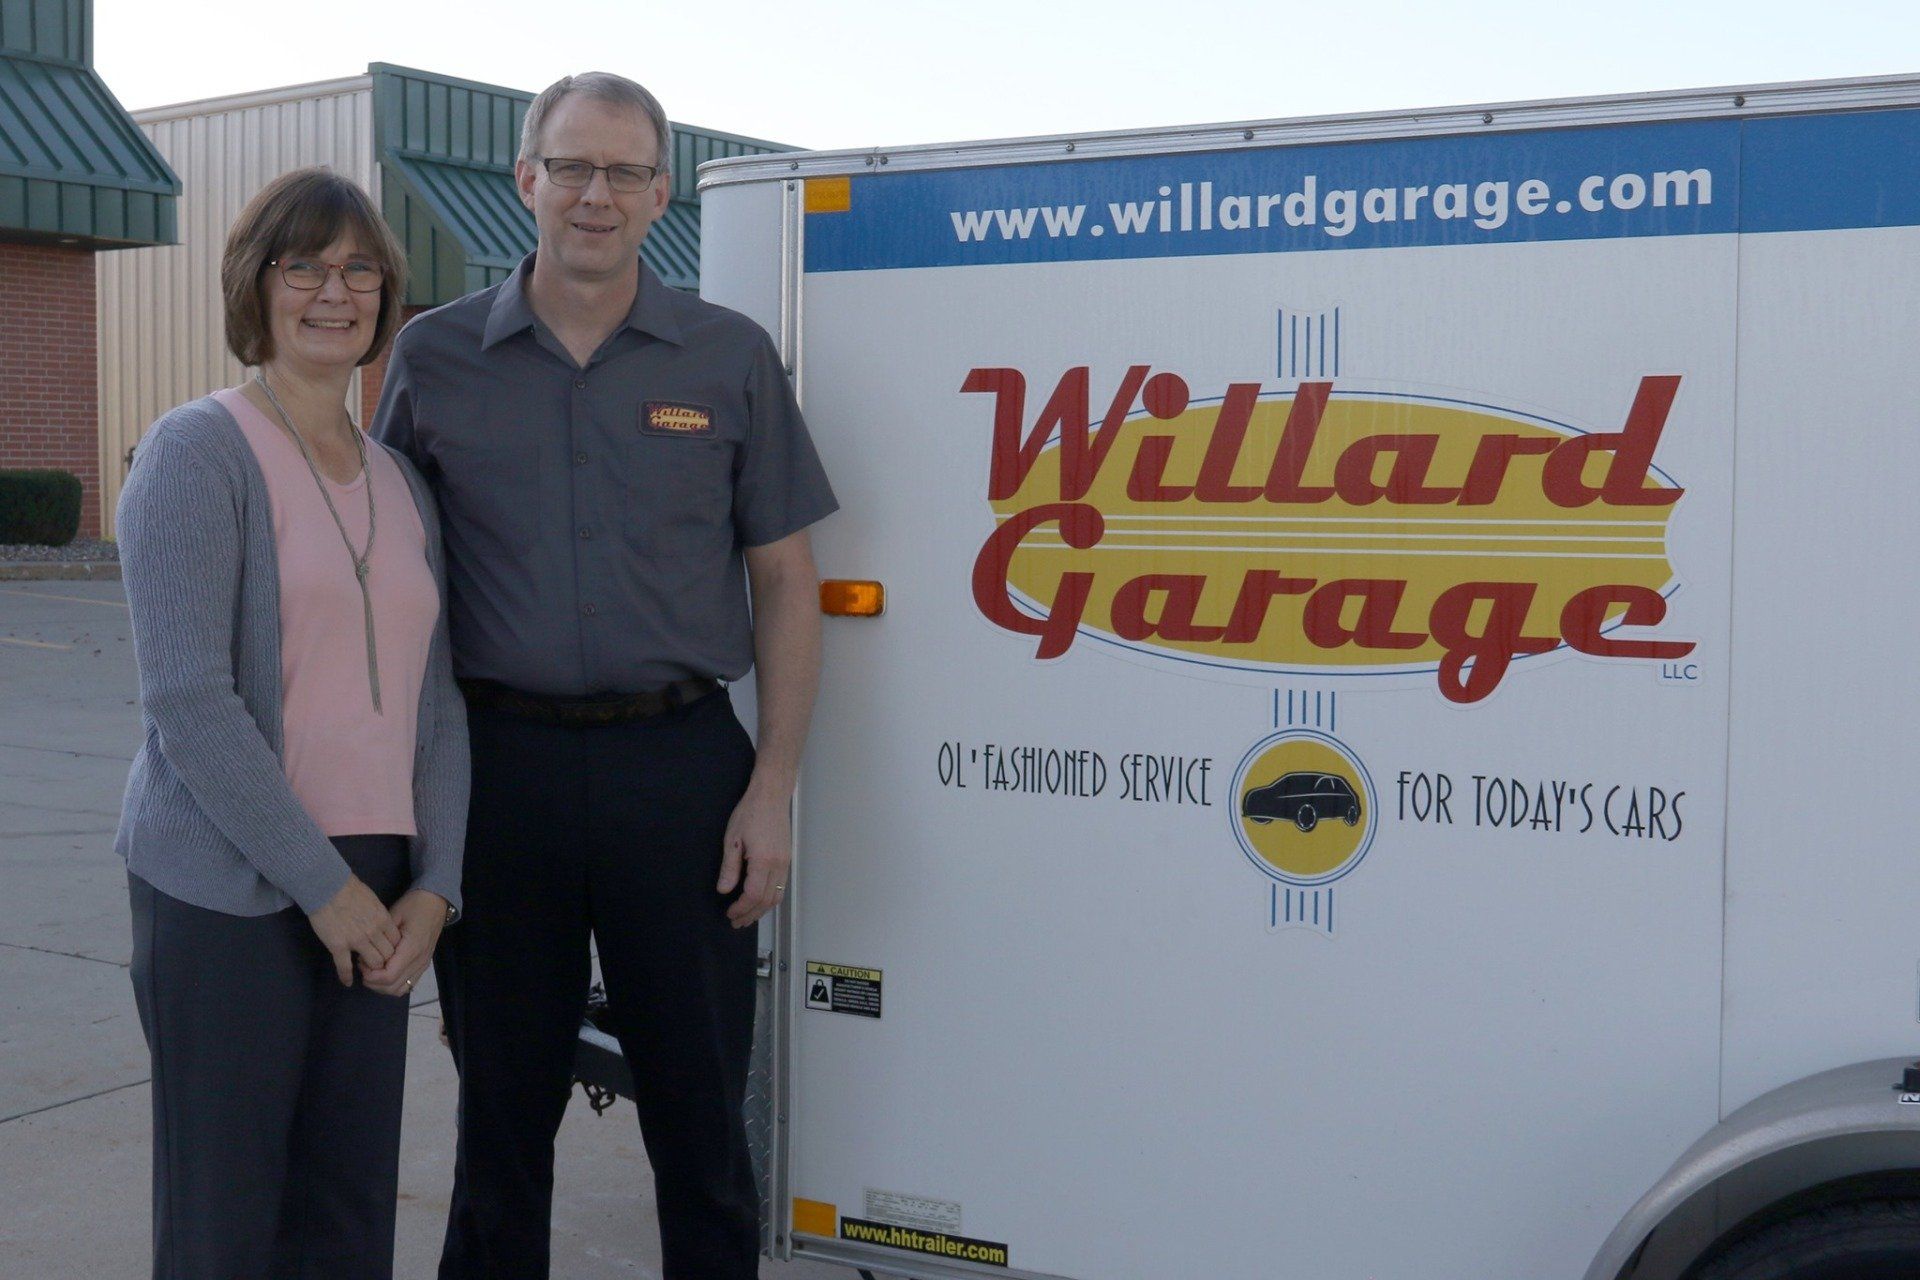 About Willard Garage